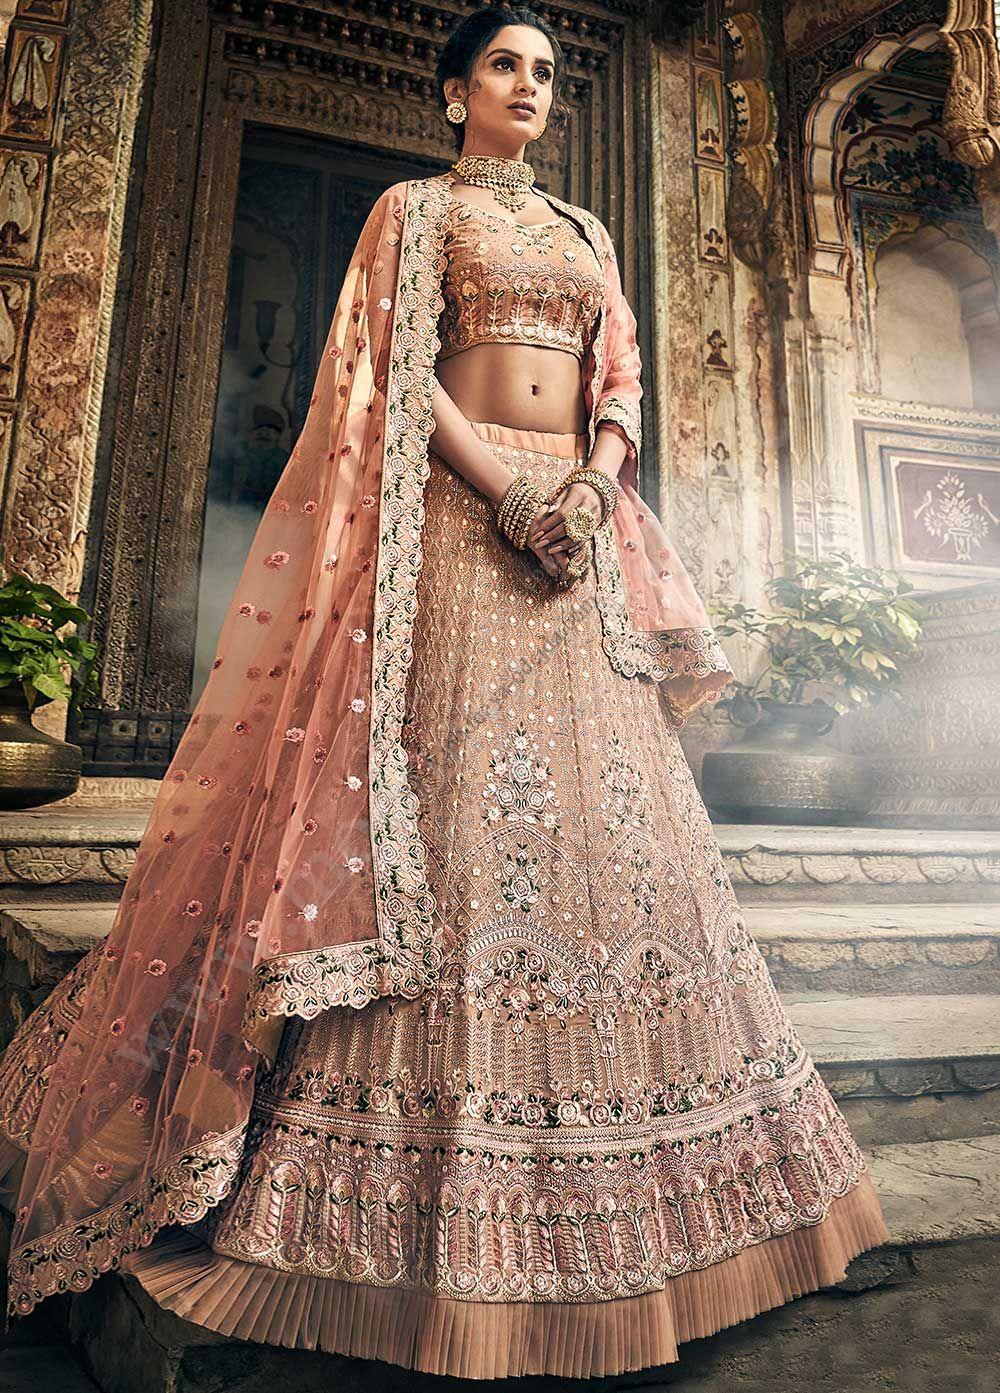 Costume de mariage pour femme indienne ...